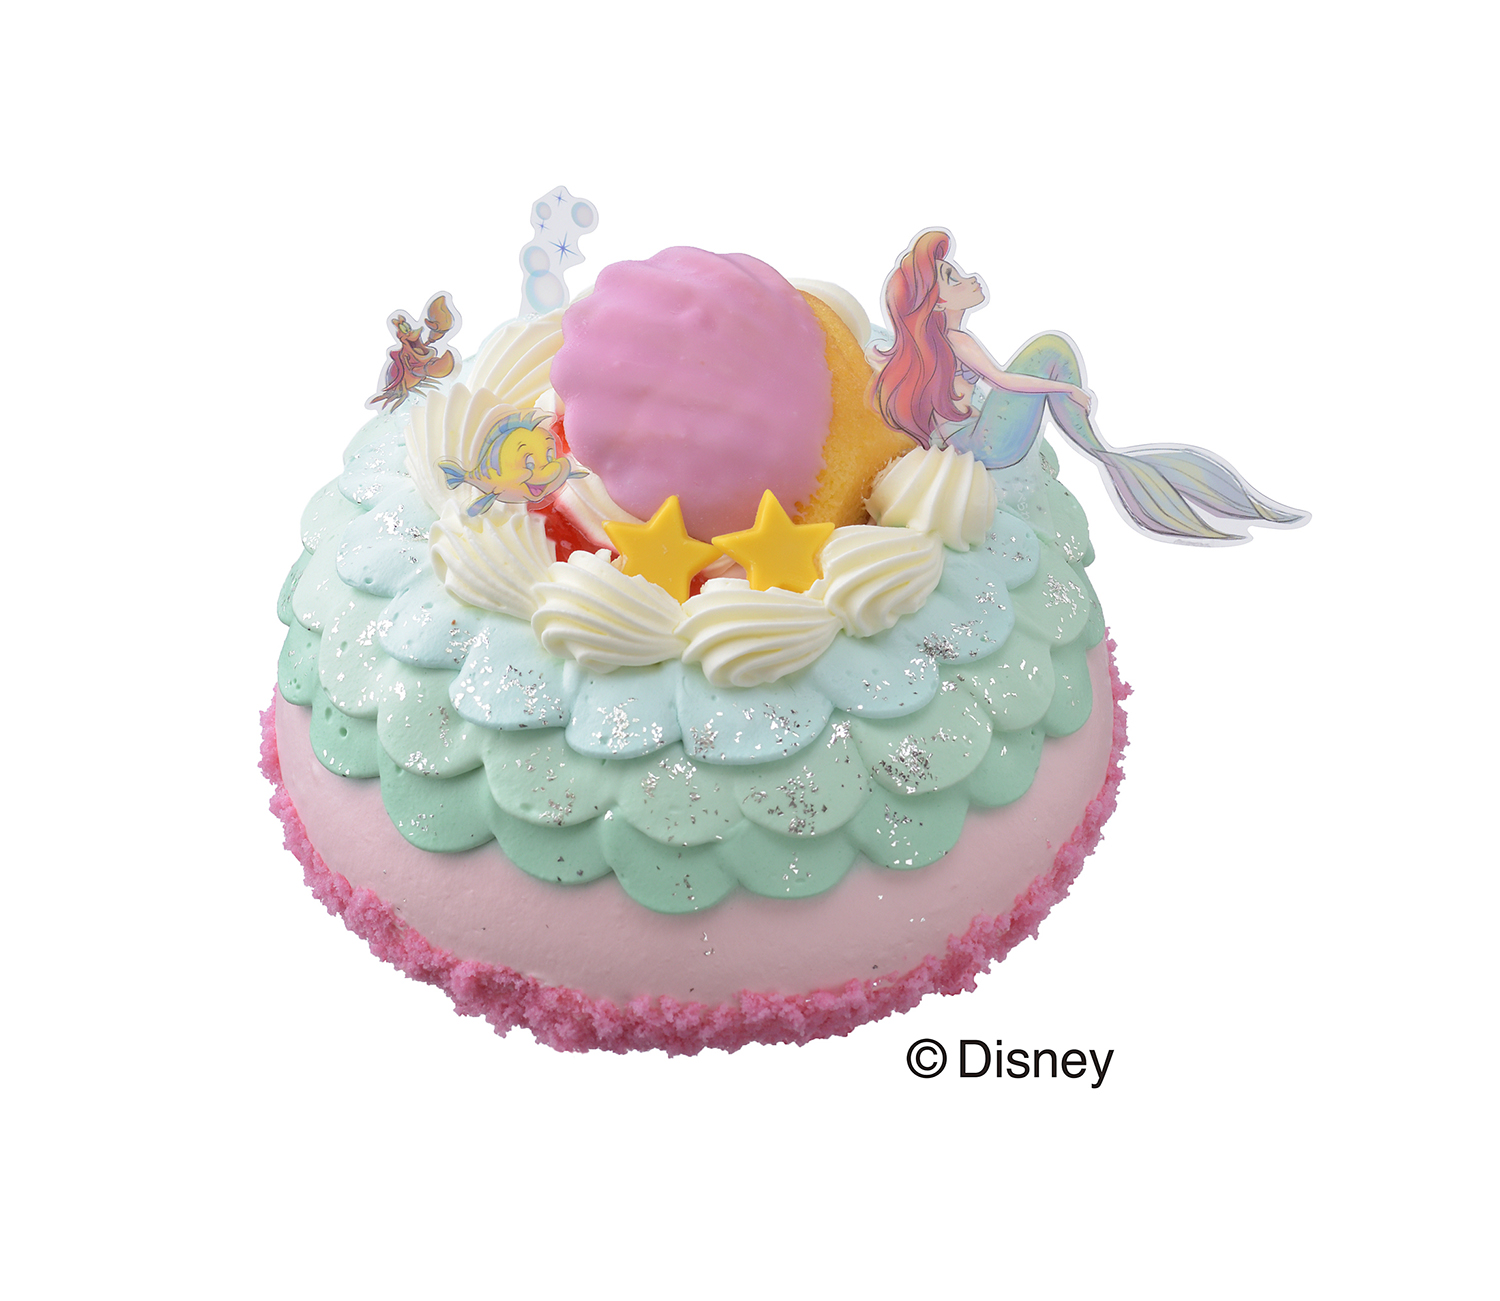 アリエルが暮らす海の王国を表現 コージーコーナーからディズニー人気作品 リトル マーメイド デザインのケーキ発売 Emo Miu エモミュー